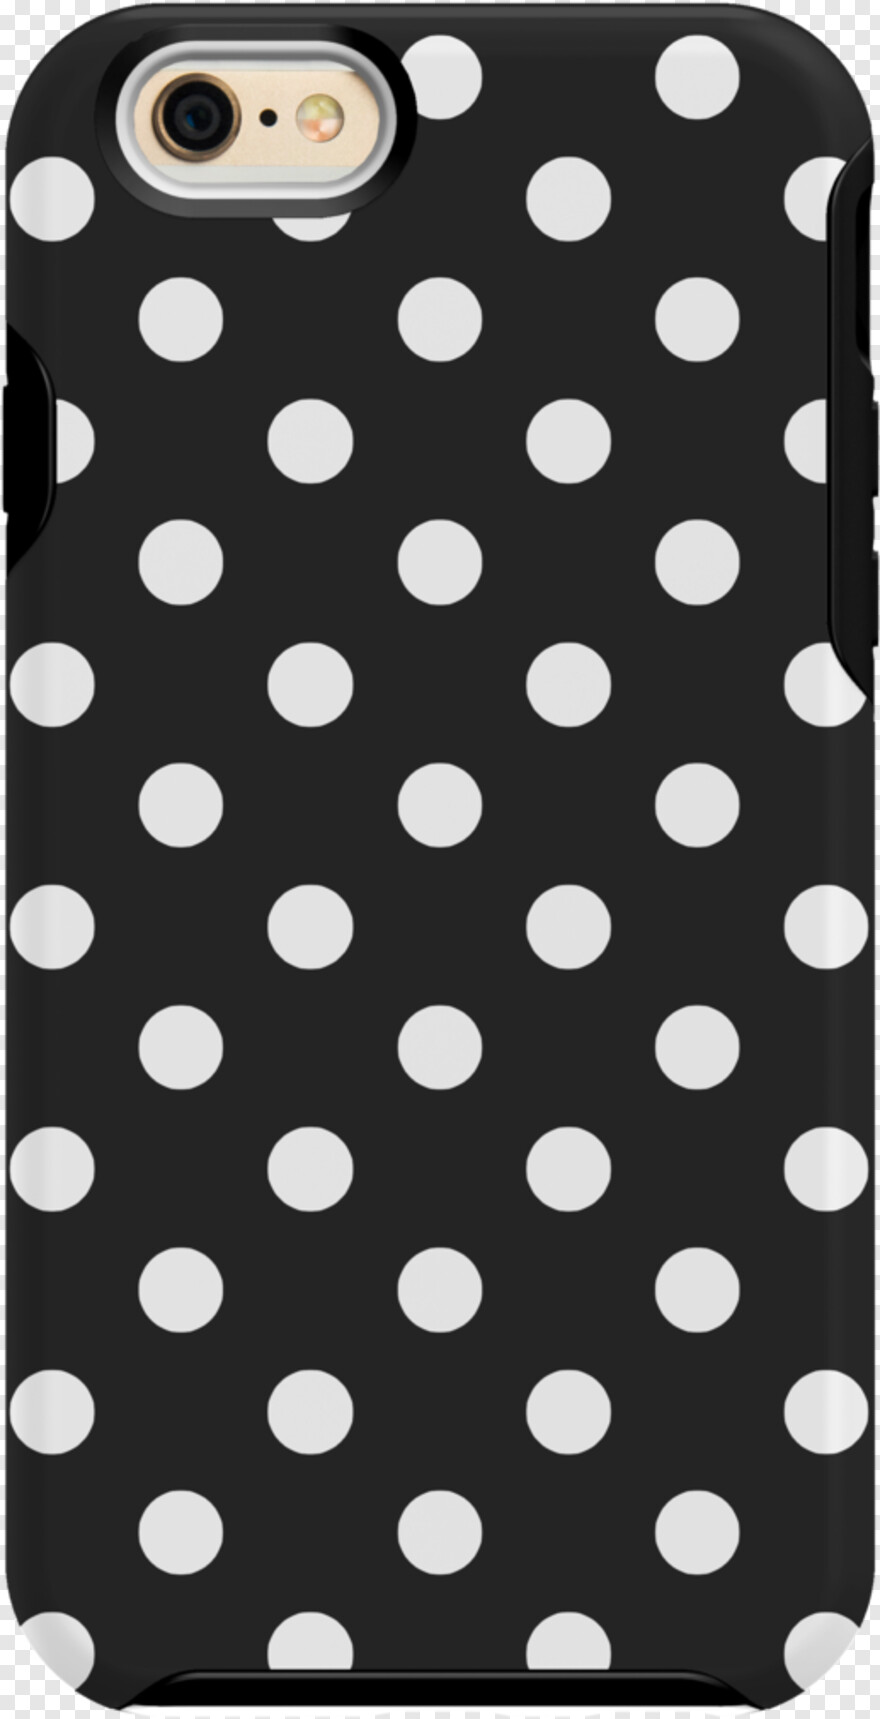 polka-dots # 356054